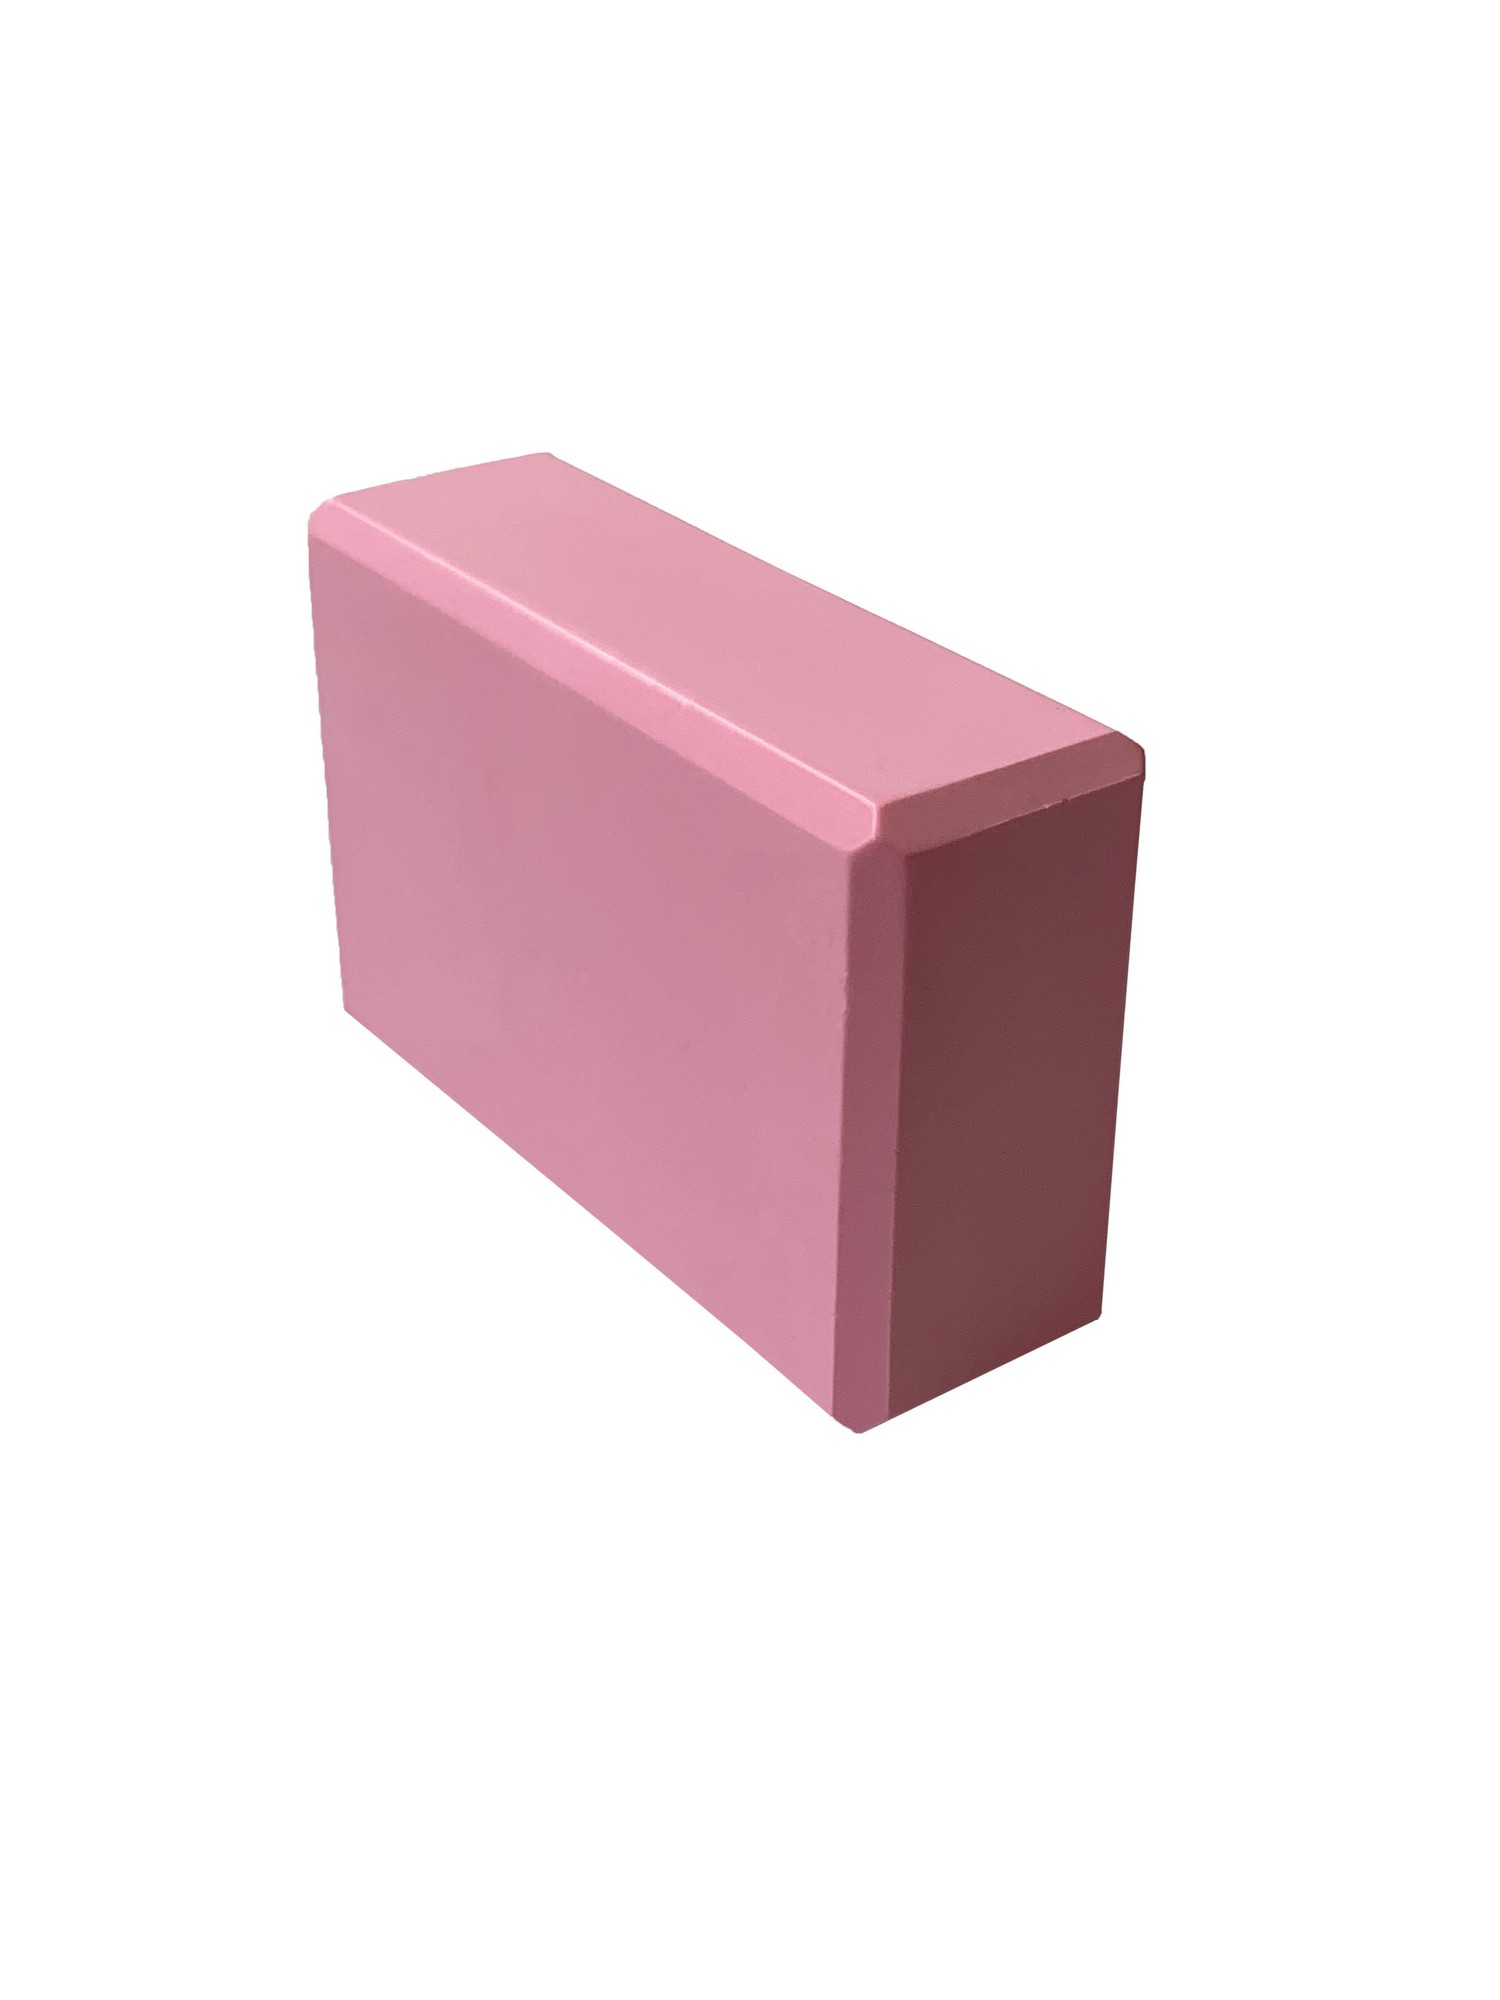 Йога блок Sportex полумягкий, из вспененного ЭВА 22,3х15х7,6 см E39131-44 светло розовый